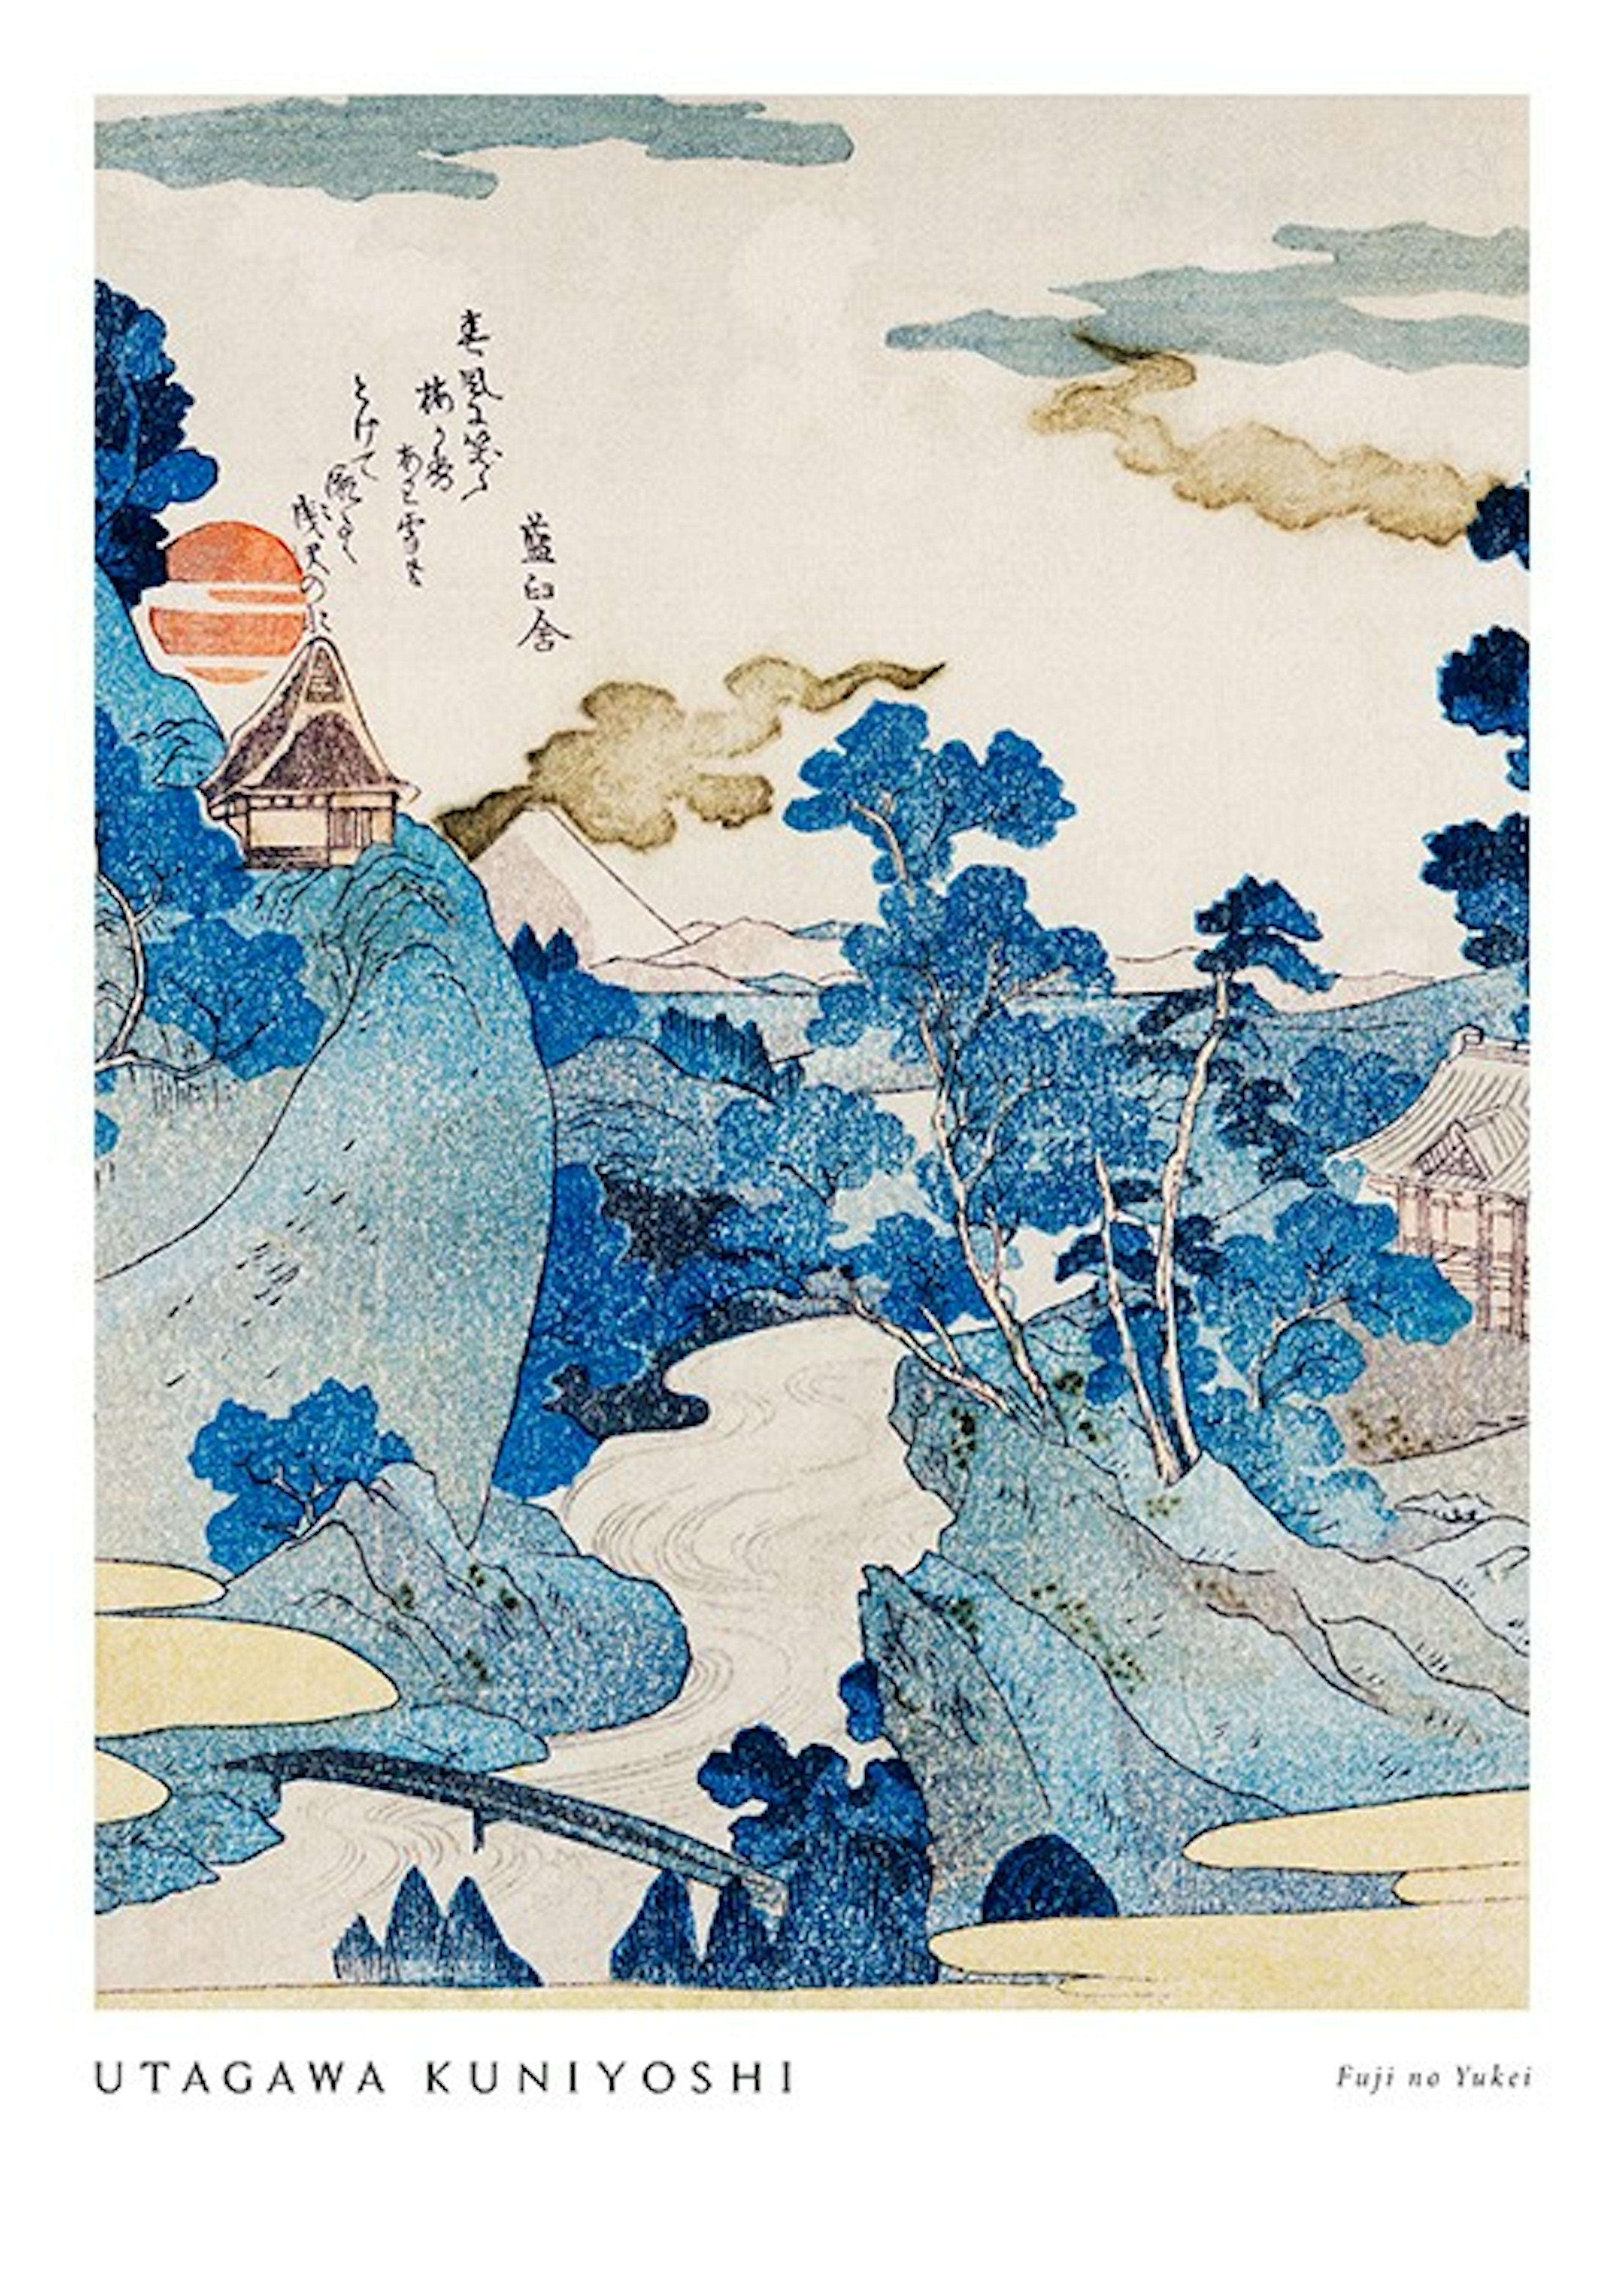 Utagawa Kuniyoshi - Fuji no Yukei Plakát 0